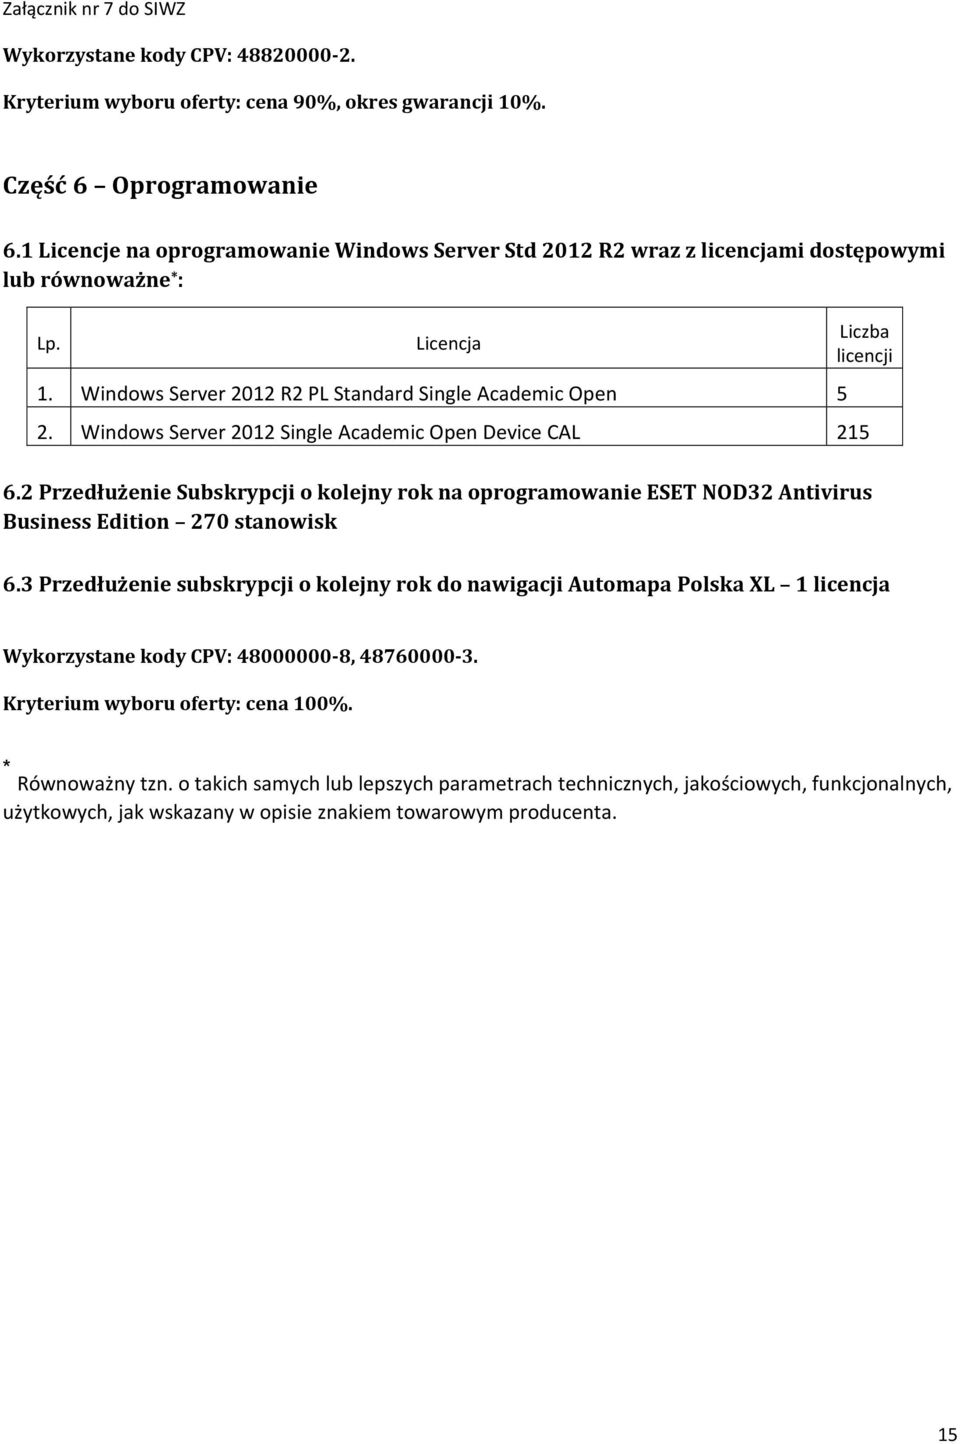 Windows Server 2012 Single Academic Open Device CAL 215 Liczba licencji 6.2 Przedłużenie Subskrypcji o kolejny rok na oprogramowanie ESET NOD32 Antivirus Business Edition 270 stanowisk 6.